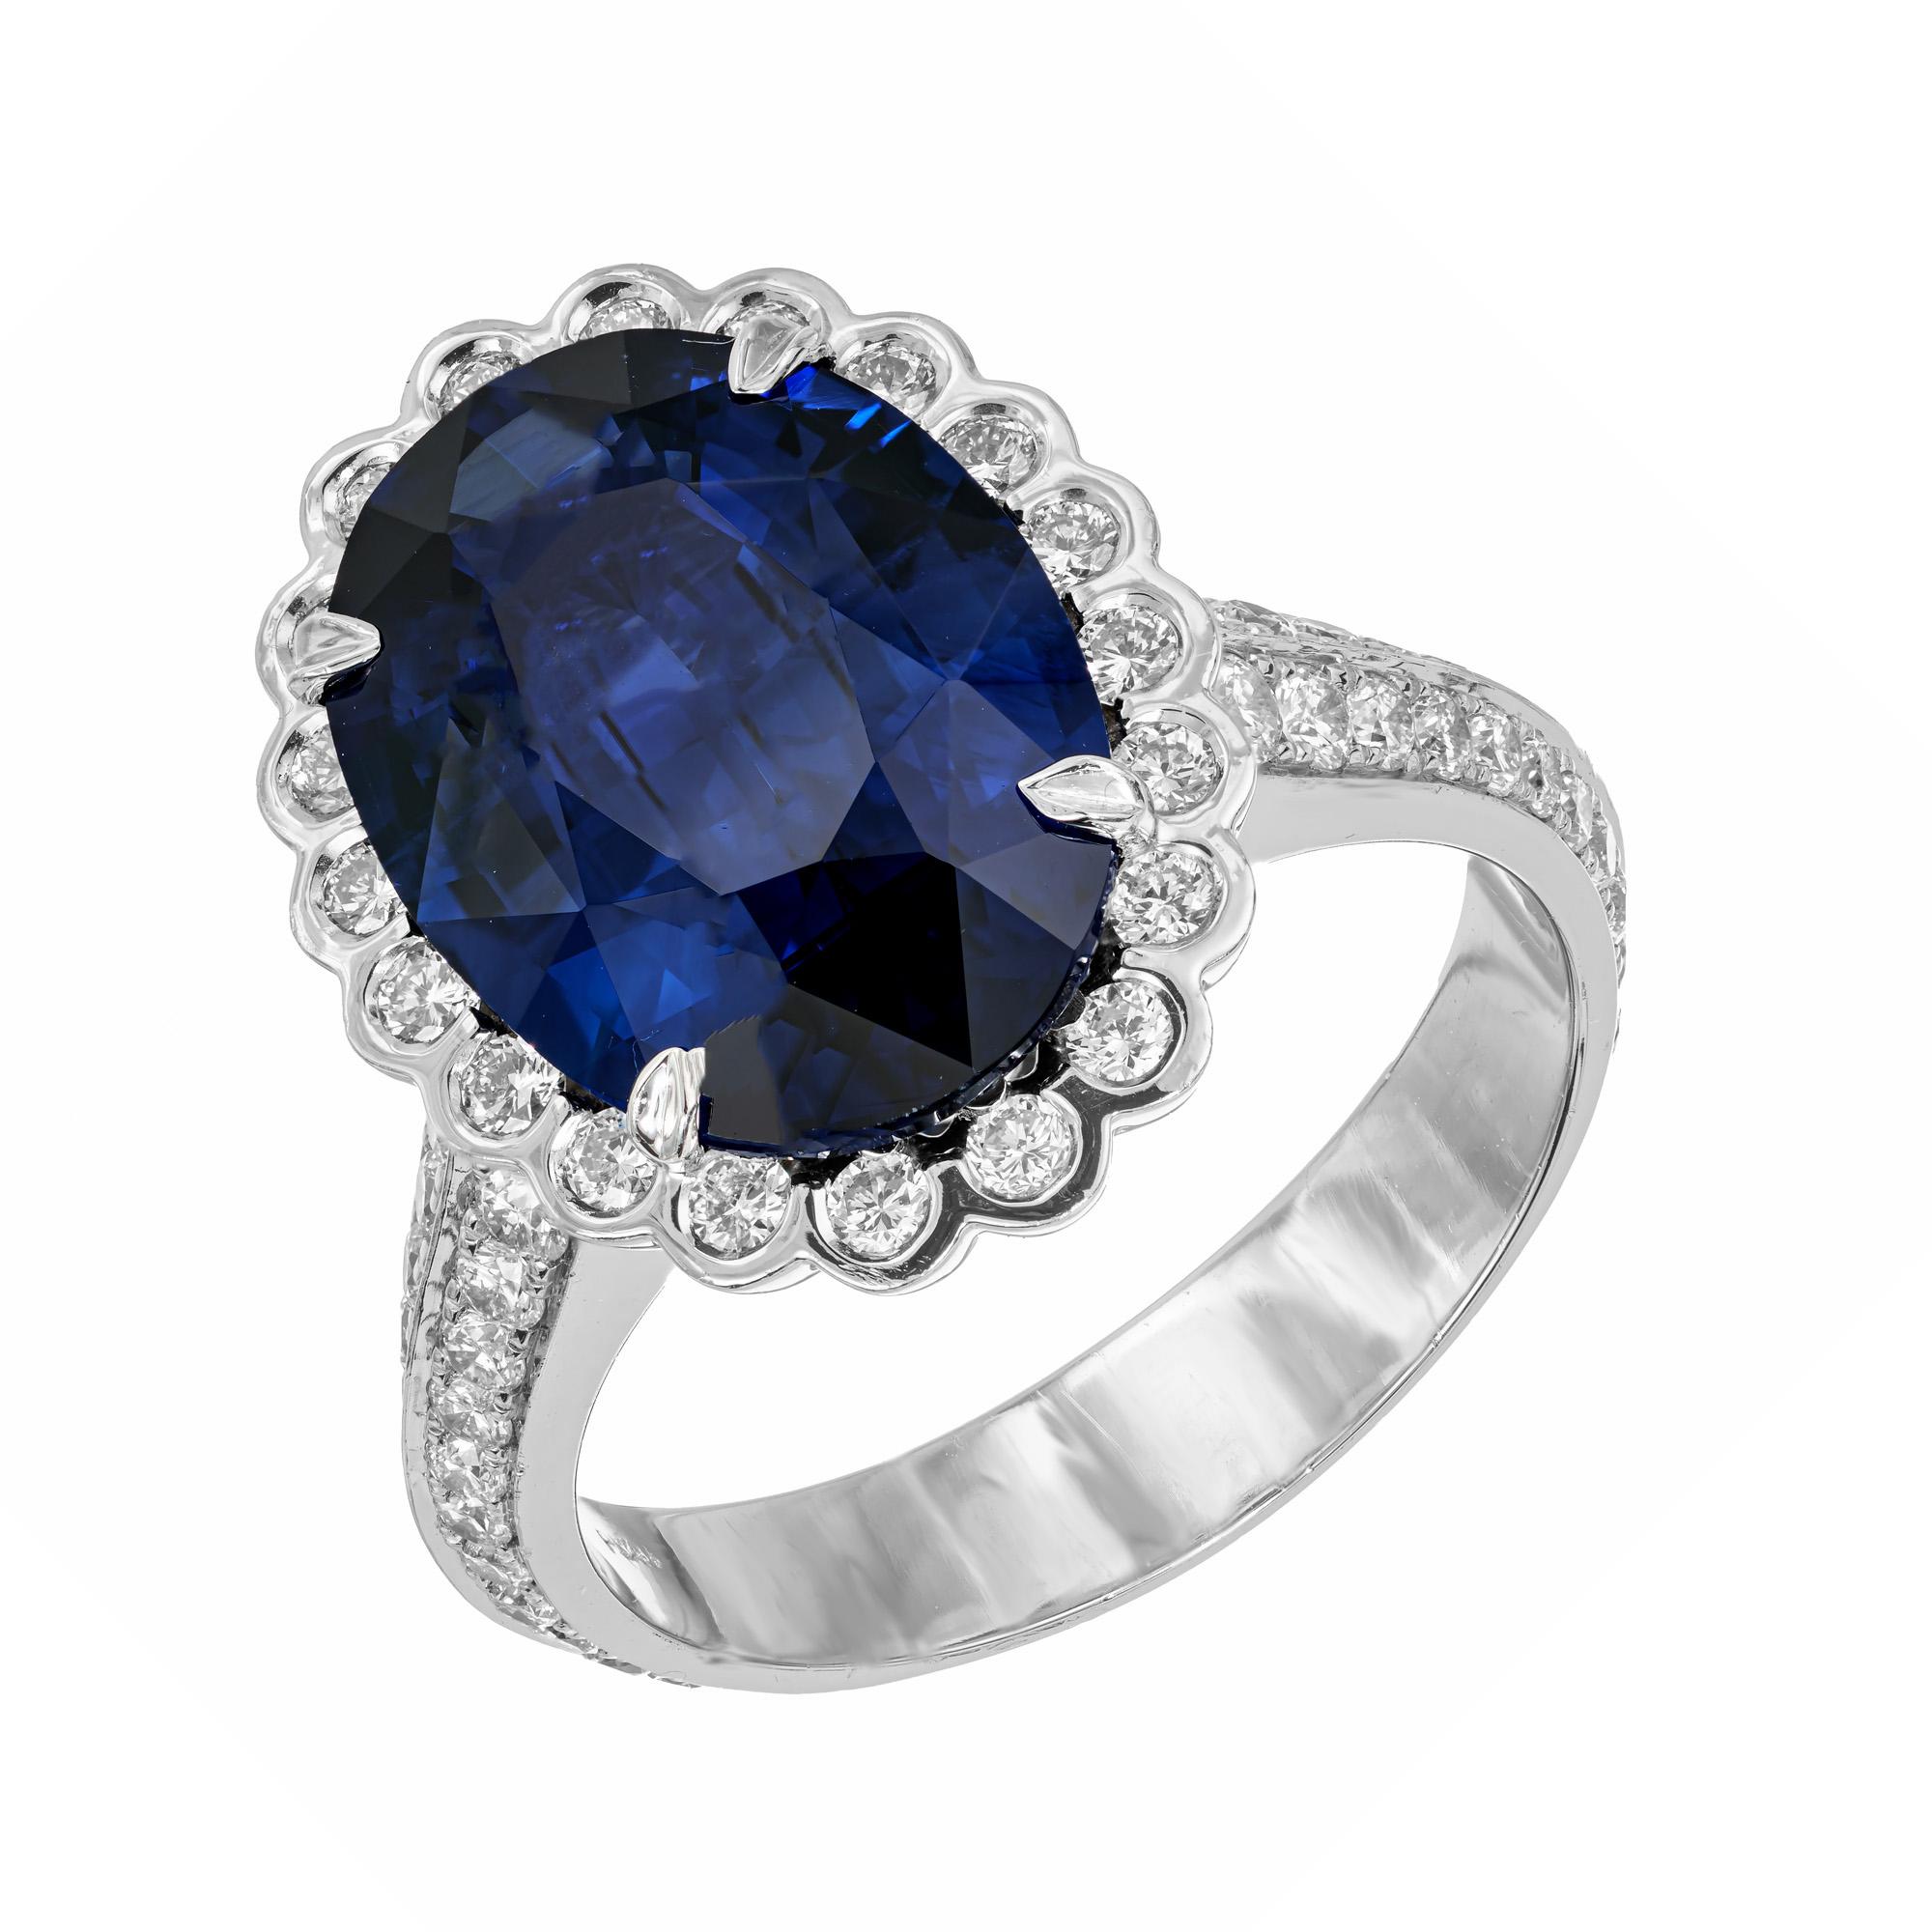 Bague de fiançailles à halo de saphirs et de diamants. Saphir central de forme ovale, certifié par le GIA, d'un bleu profond et de grande surface, serti dans une monture en platine avec un halo de diamants ronds sertis en chaton, accentué par deux